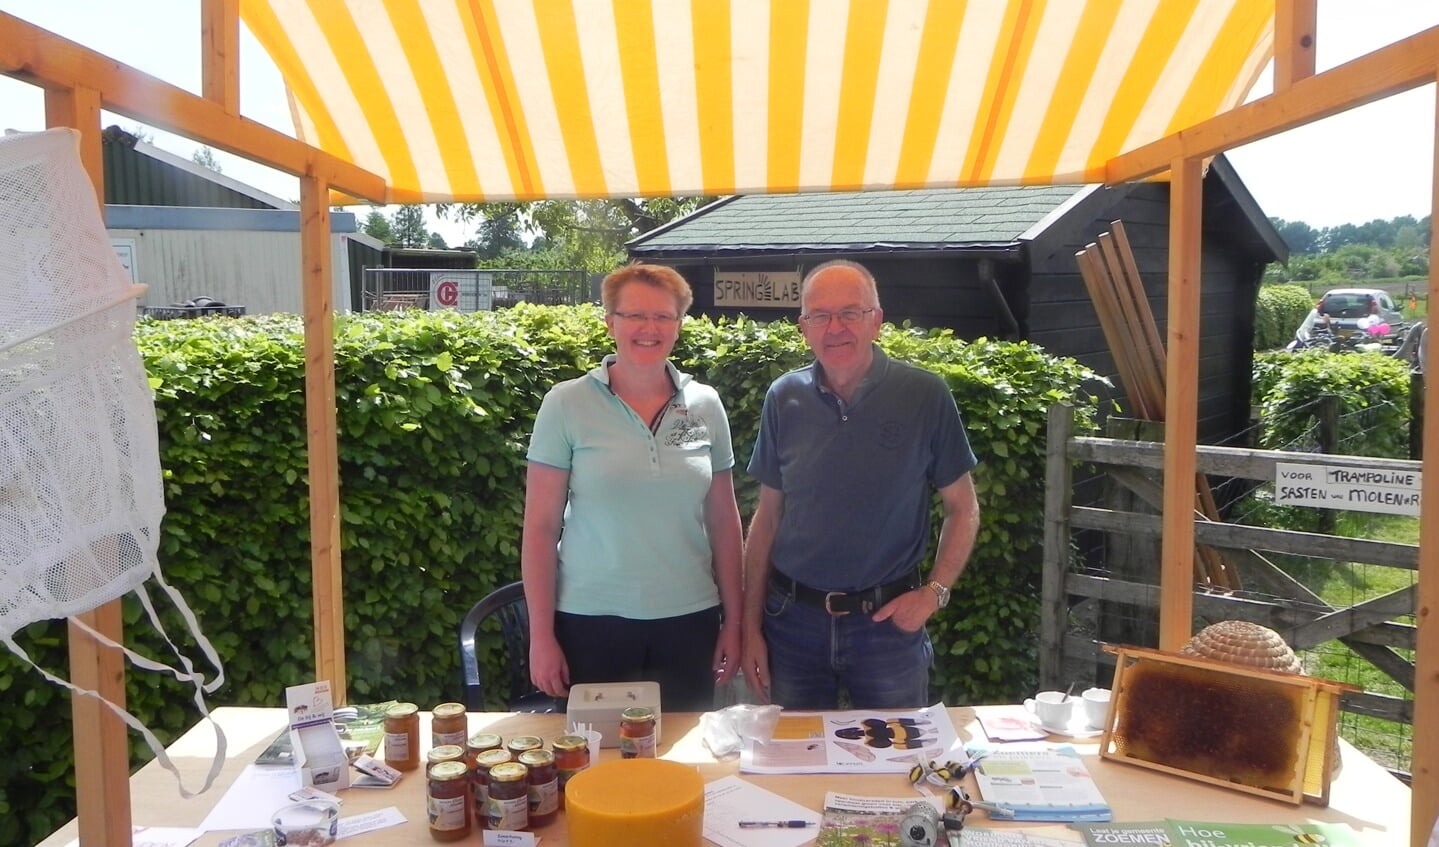 Imkers Iebe en Ingrid Mondermangaven informatie over het houden van bijen en verkochten bijprodukten.                               